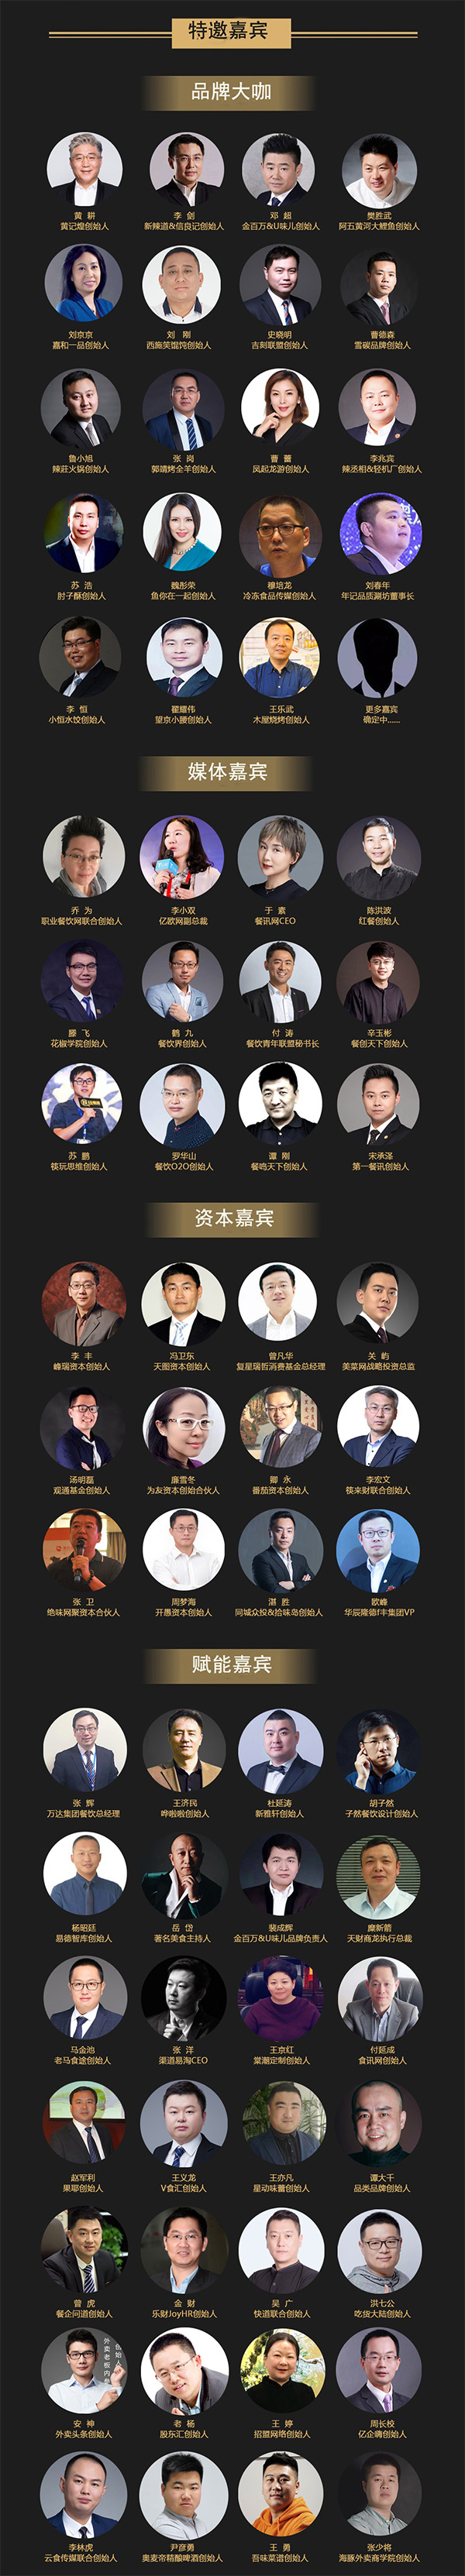 2018第七届中国餐饮产业共享峰会餐饮大咖